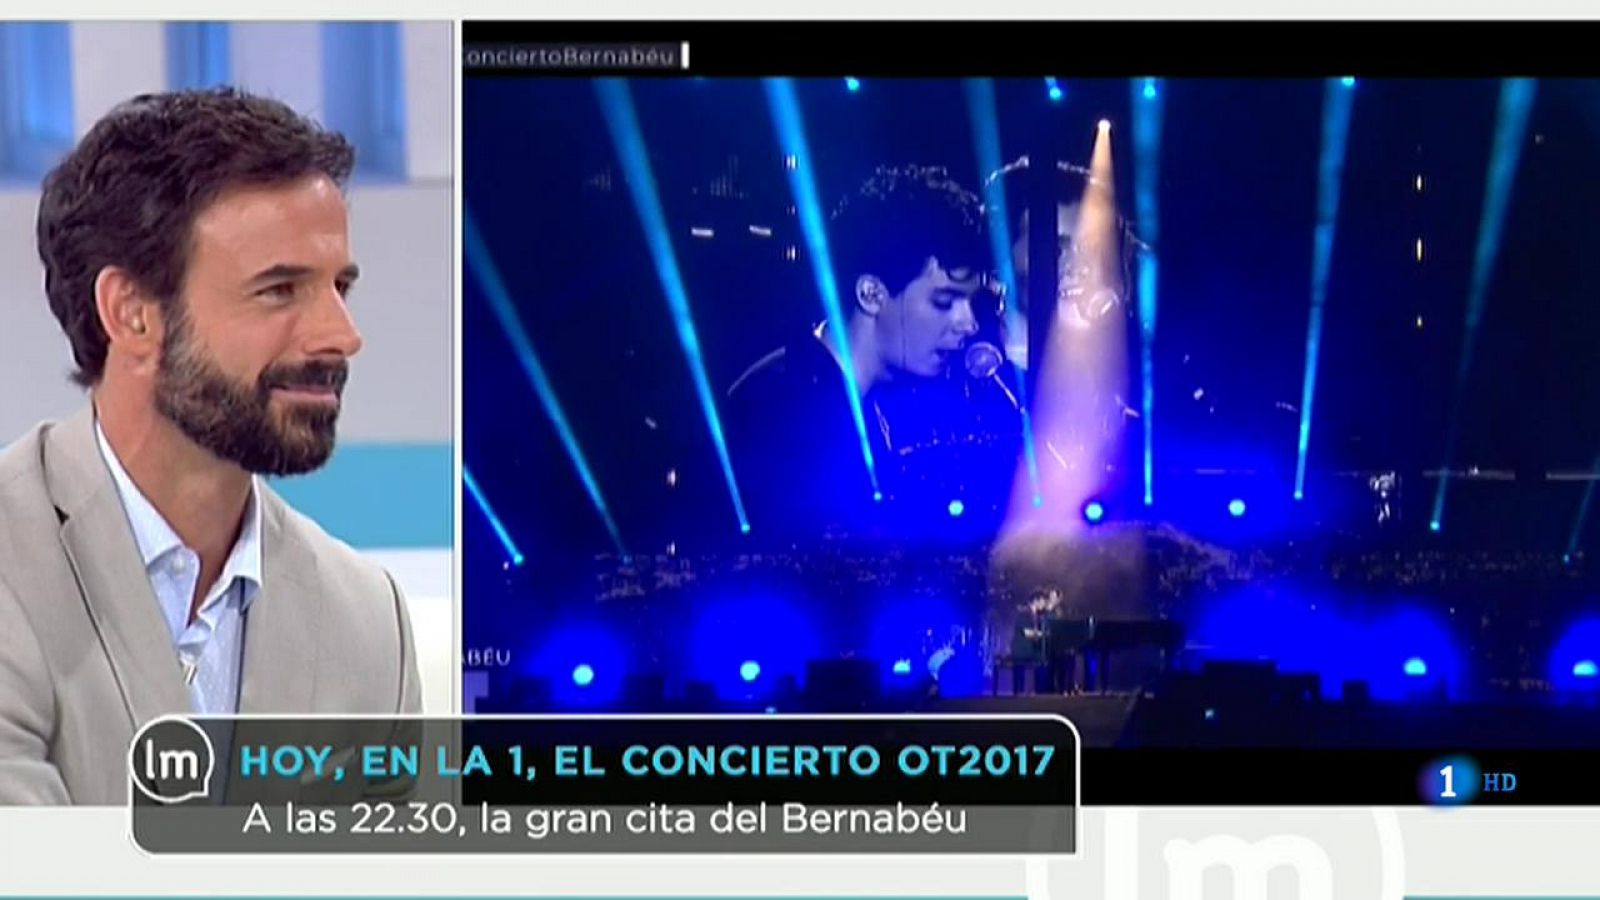 La Mañana - El concierto de OT en el Bernabéu, esta noche a las 22:30h